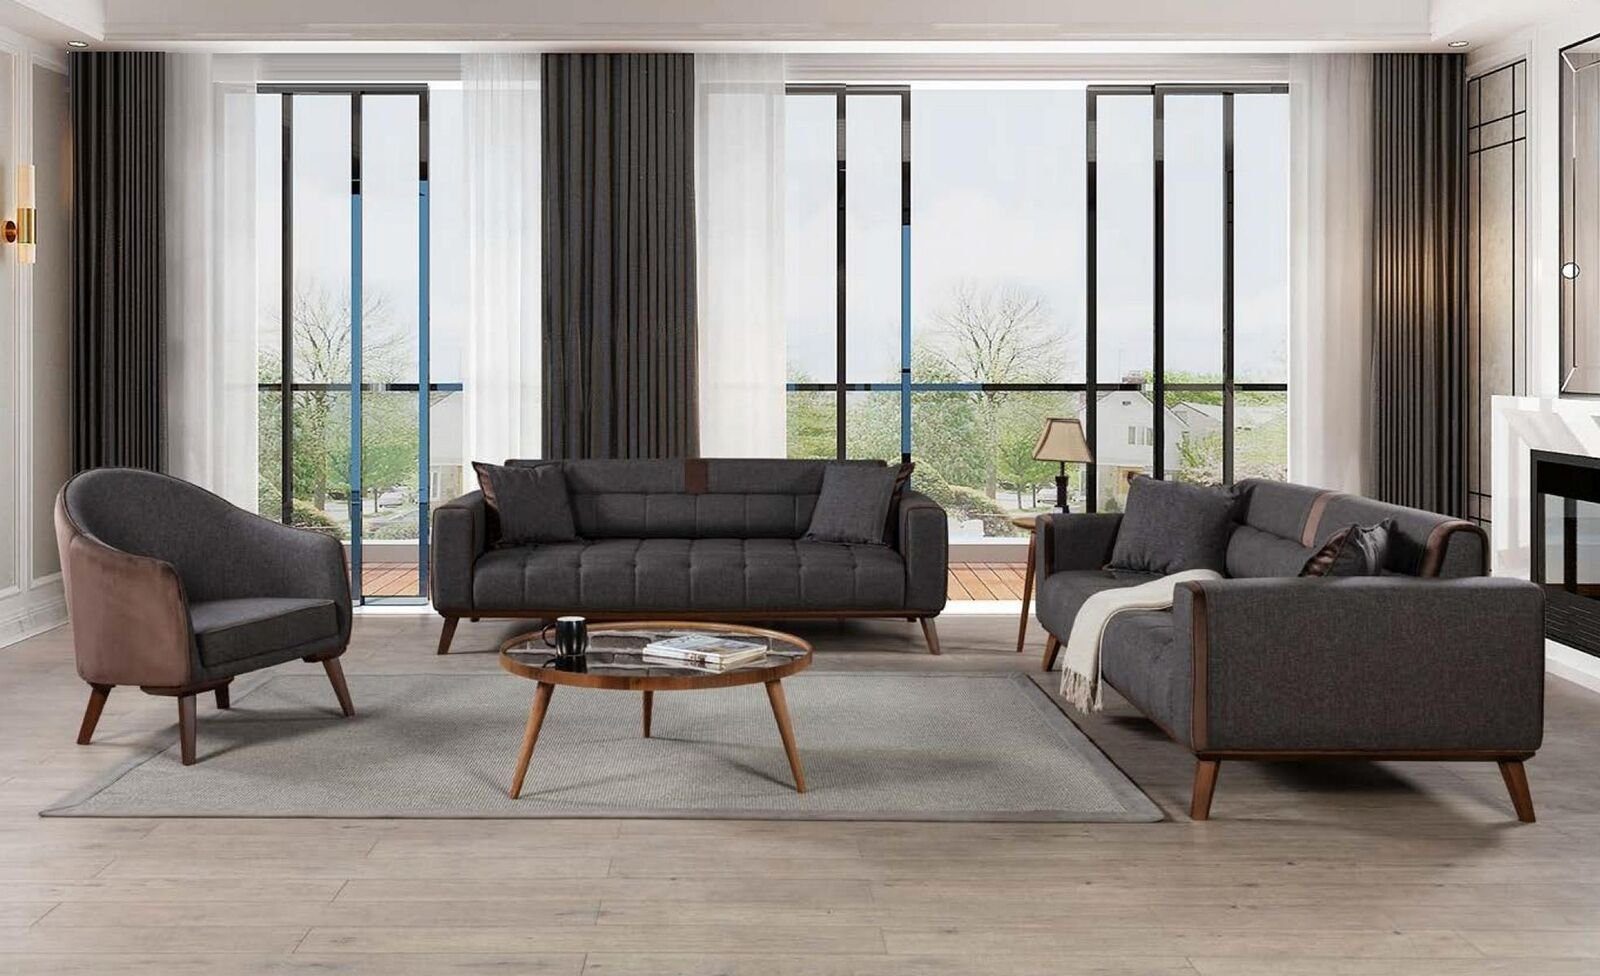 JVmoebel Sessel Design Grau 1 Stil Sitzer Luxus Einsitzer Sessel Textil Neu Wohnzimmer